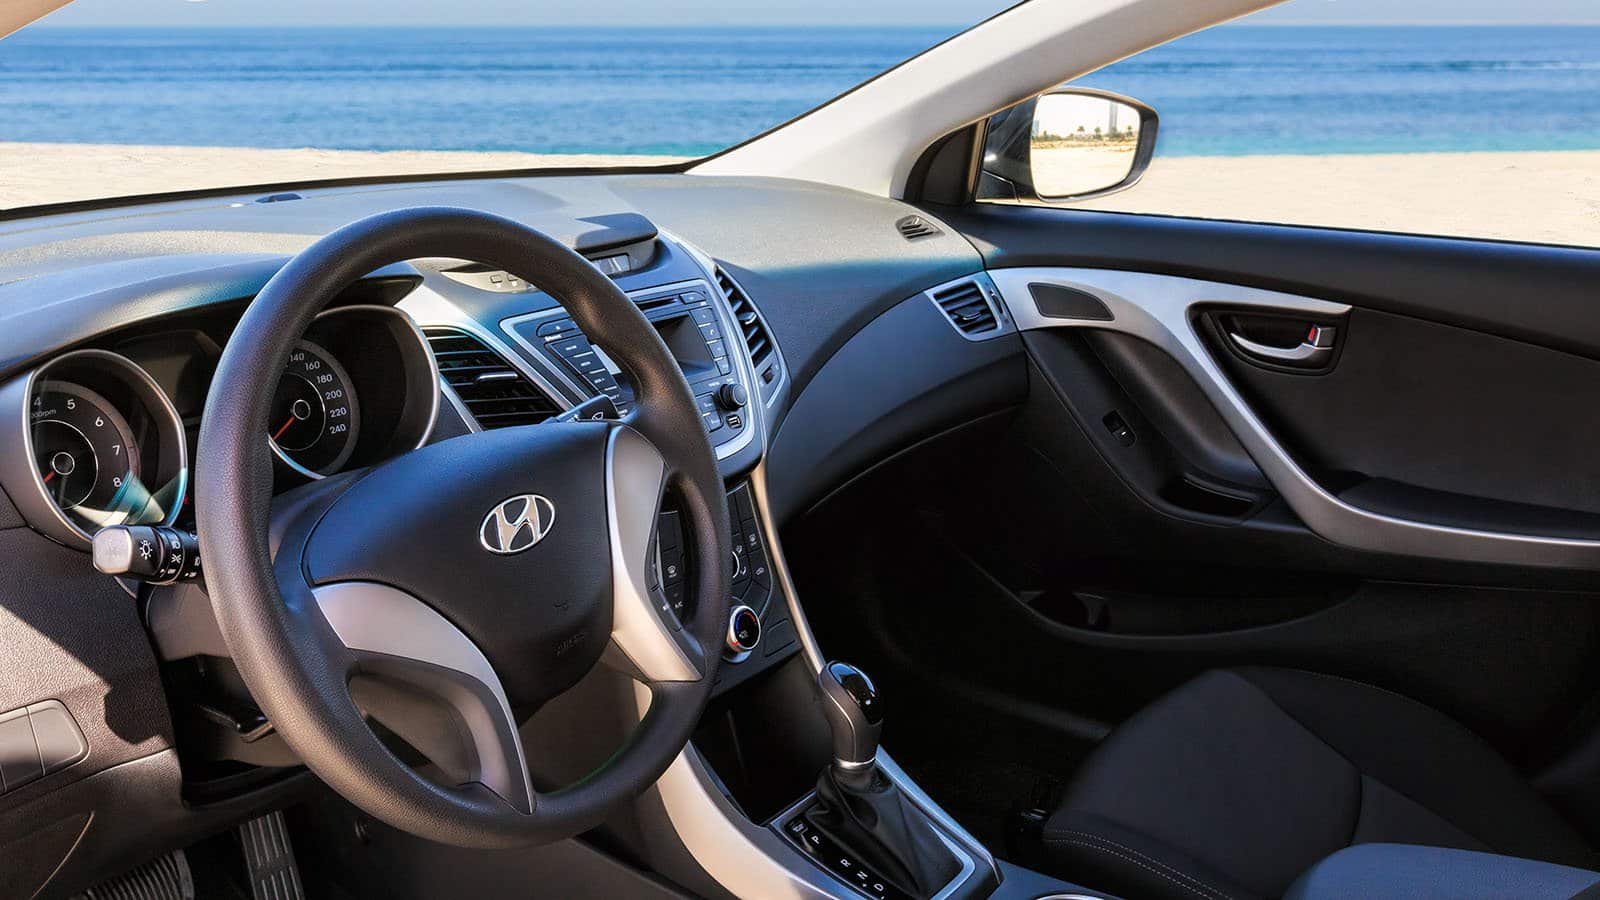 Hyundai Accent Rental Car Dubai